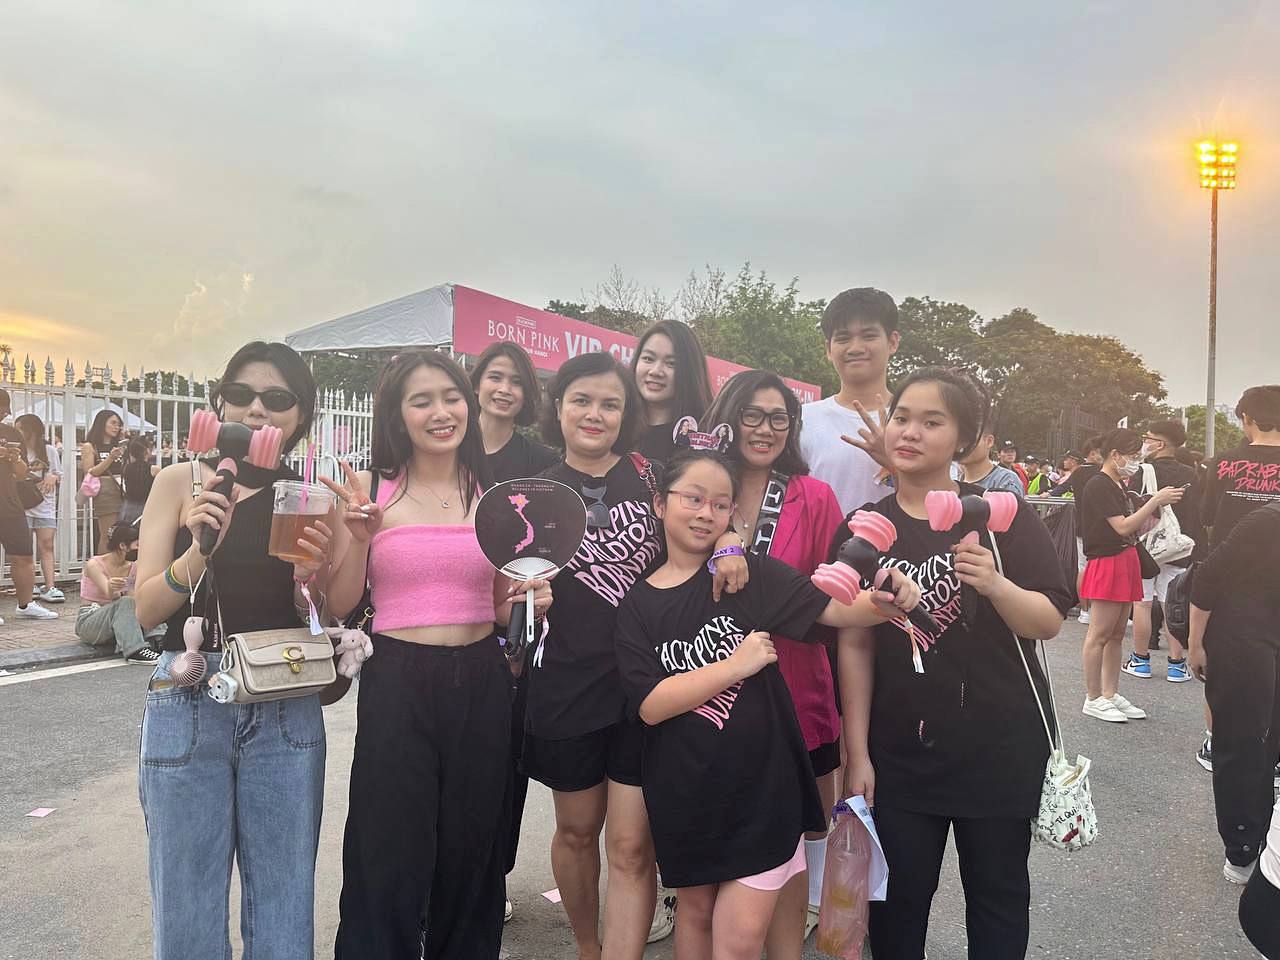 Các gia đình đến ủng hộ đêm diễn cuối cùng của BLACKPINK tại Hà Nội, nhiều người chấp nhận ôm vé vì không muốn bị ép giá - Ảnh 3.